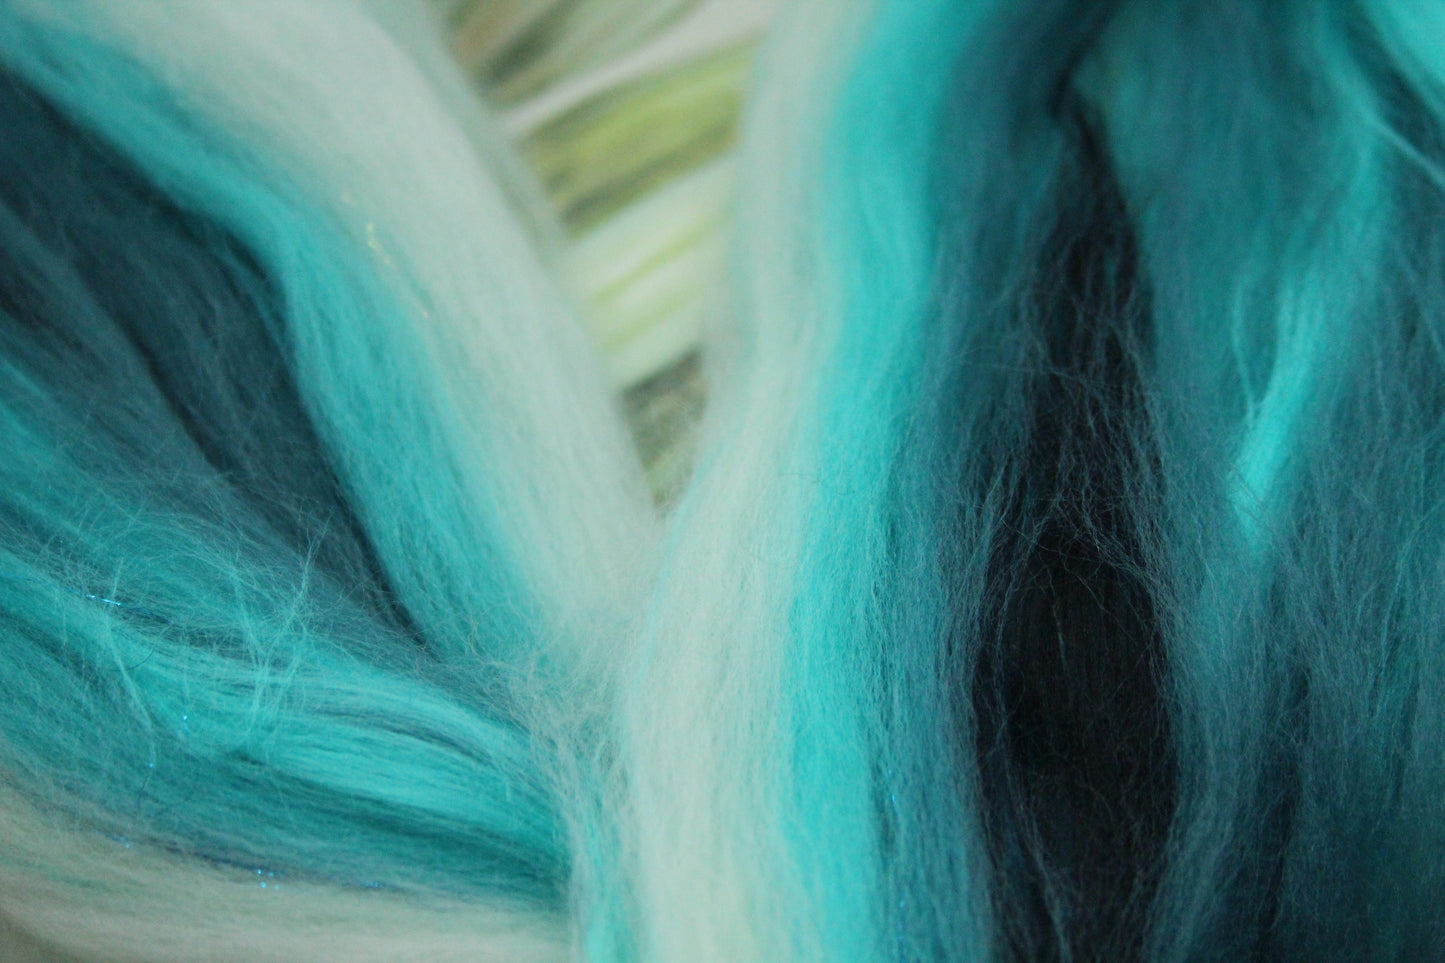 Wool Blend - Turquoise White - 21 grams / 0.7 oz  - Fibre for felting, weaving or spinning